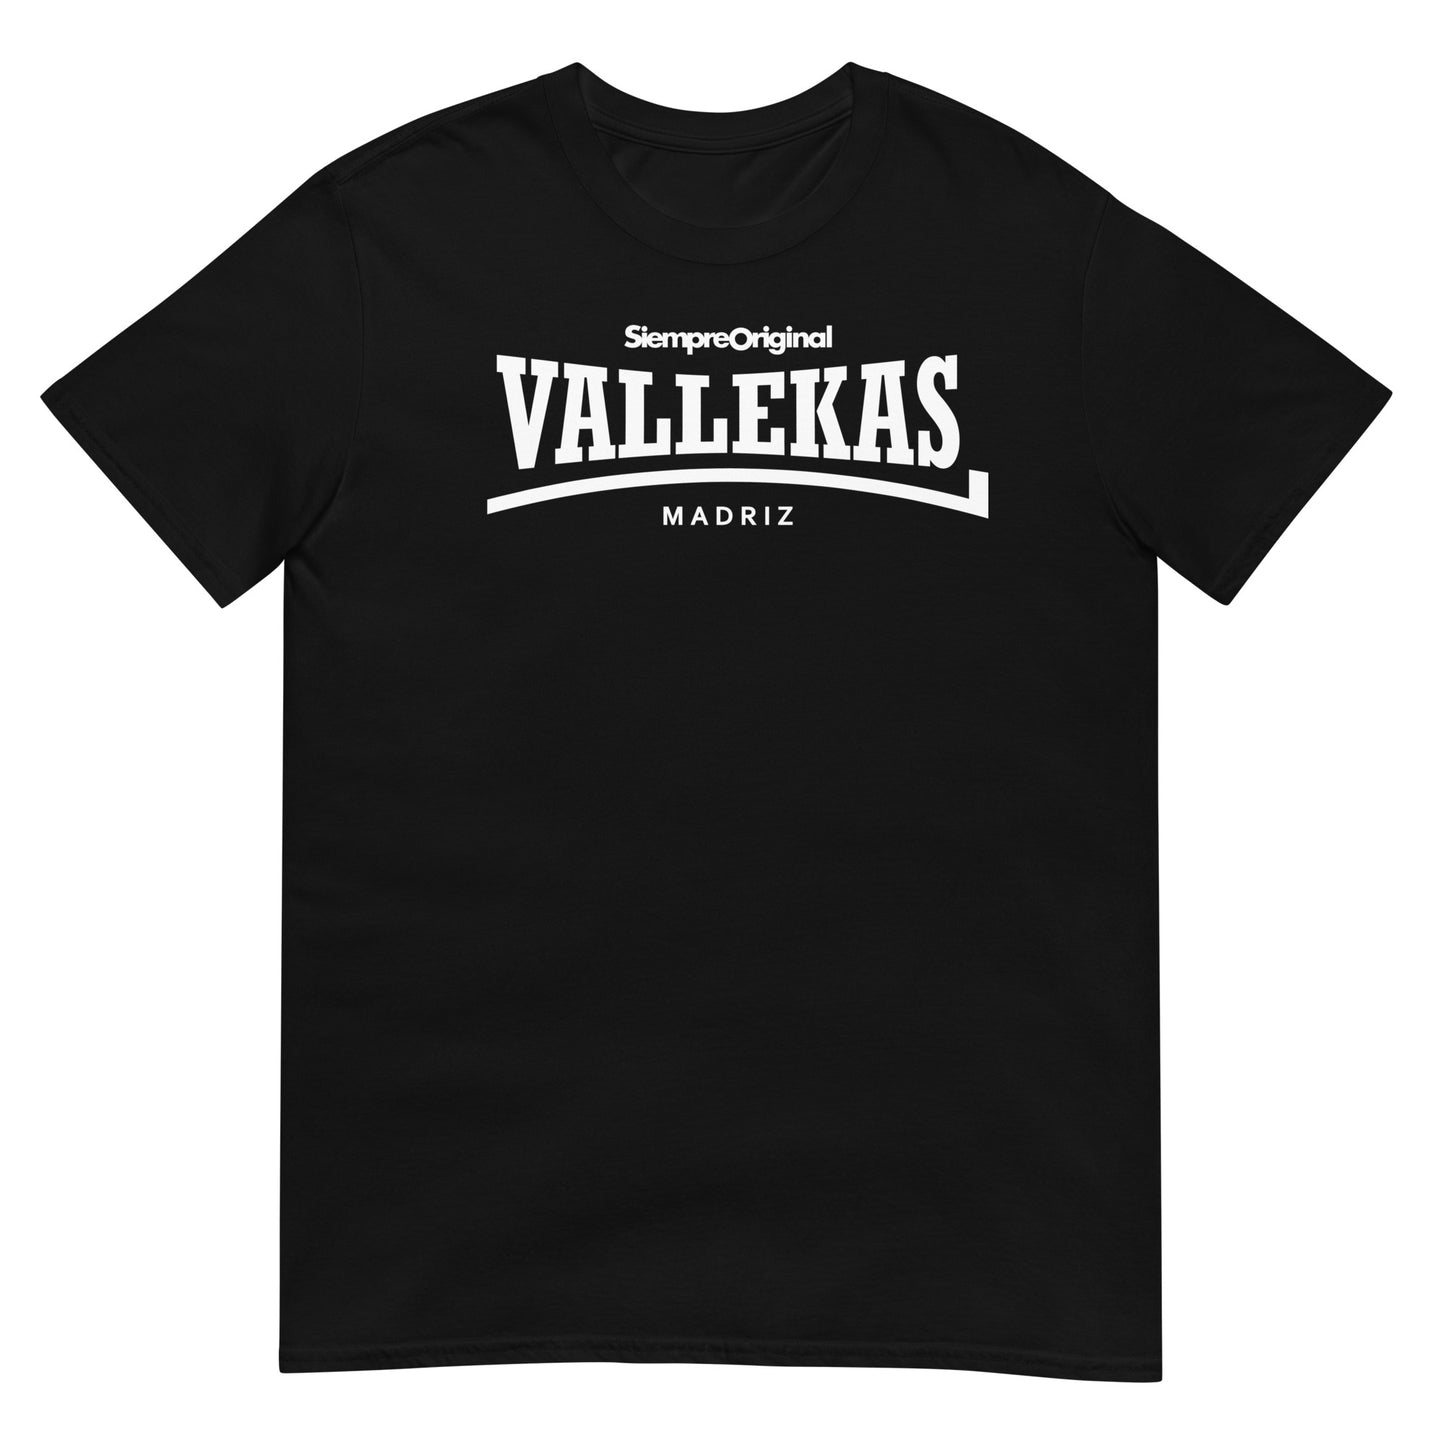 Camiseta del barrio de Vallecas - Madrid. Color Negro.